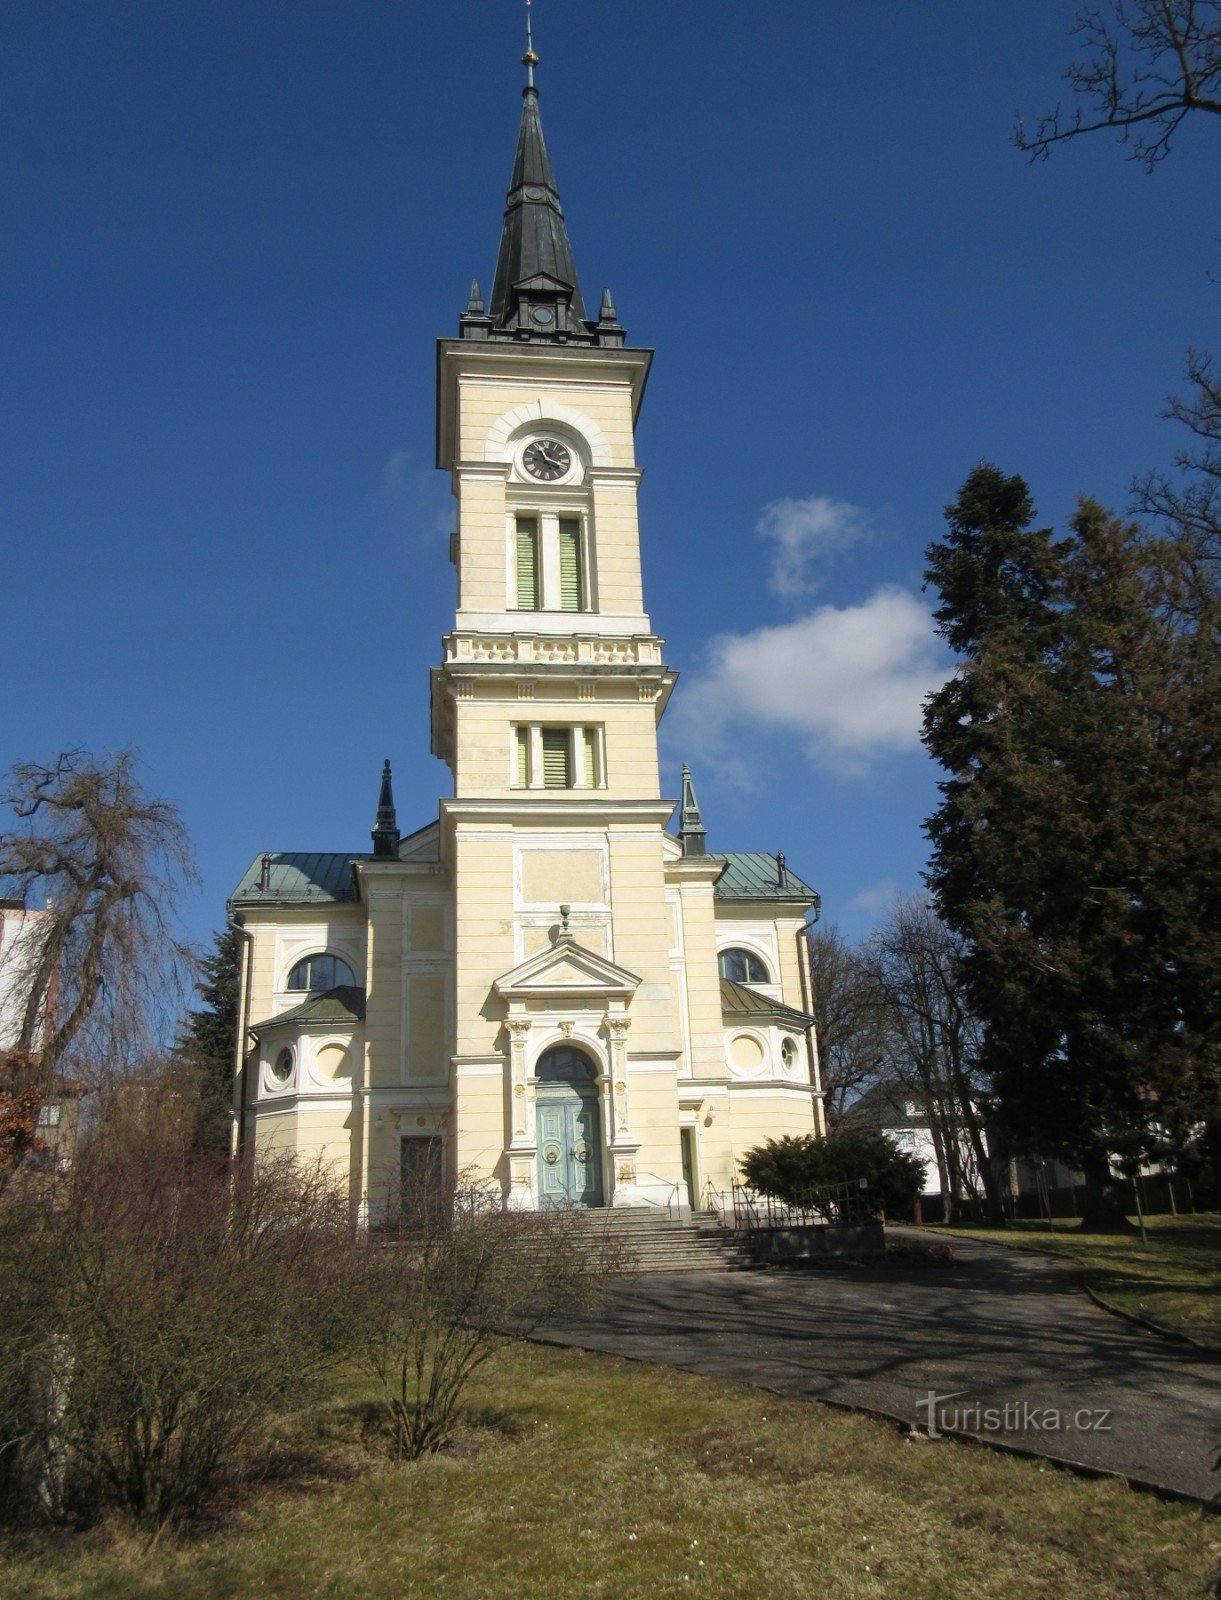 Evangelische kerk